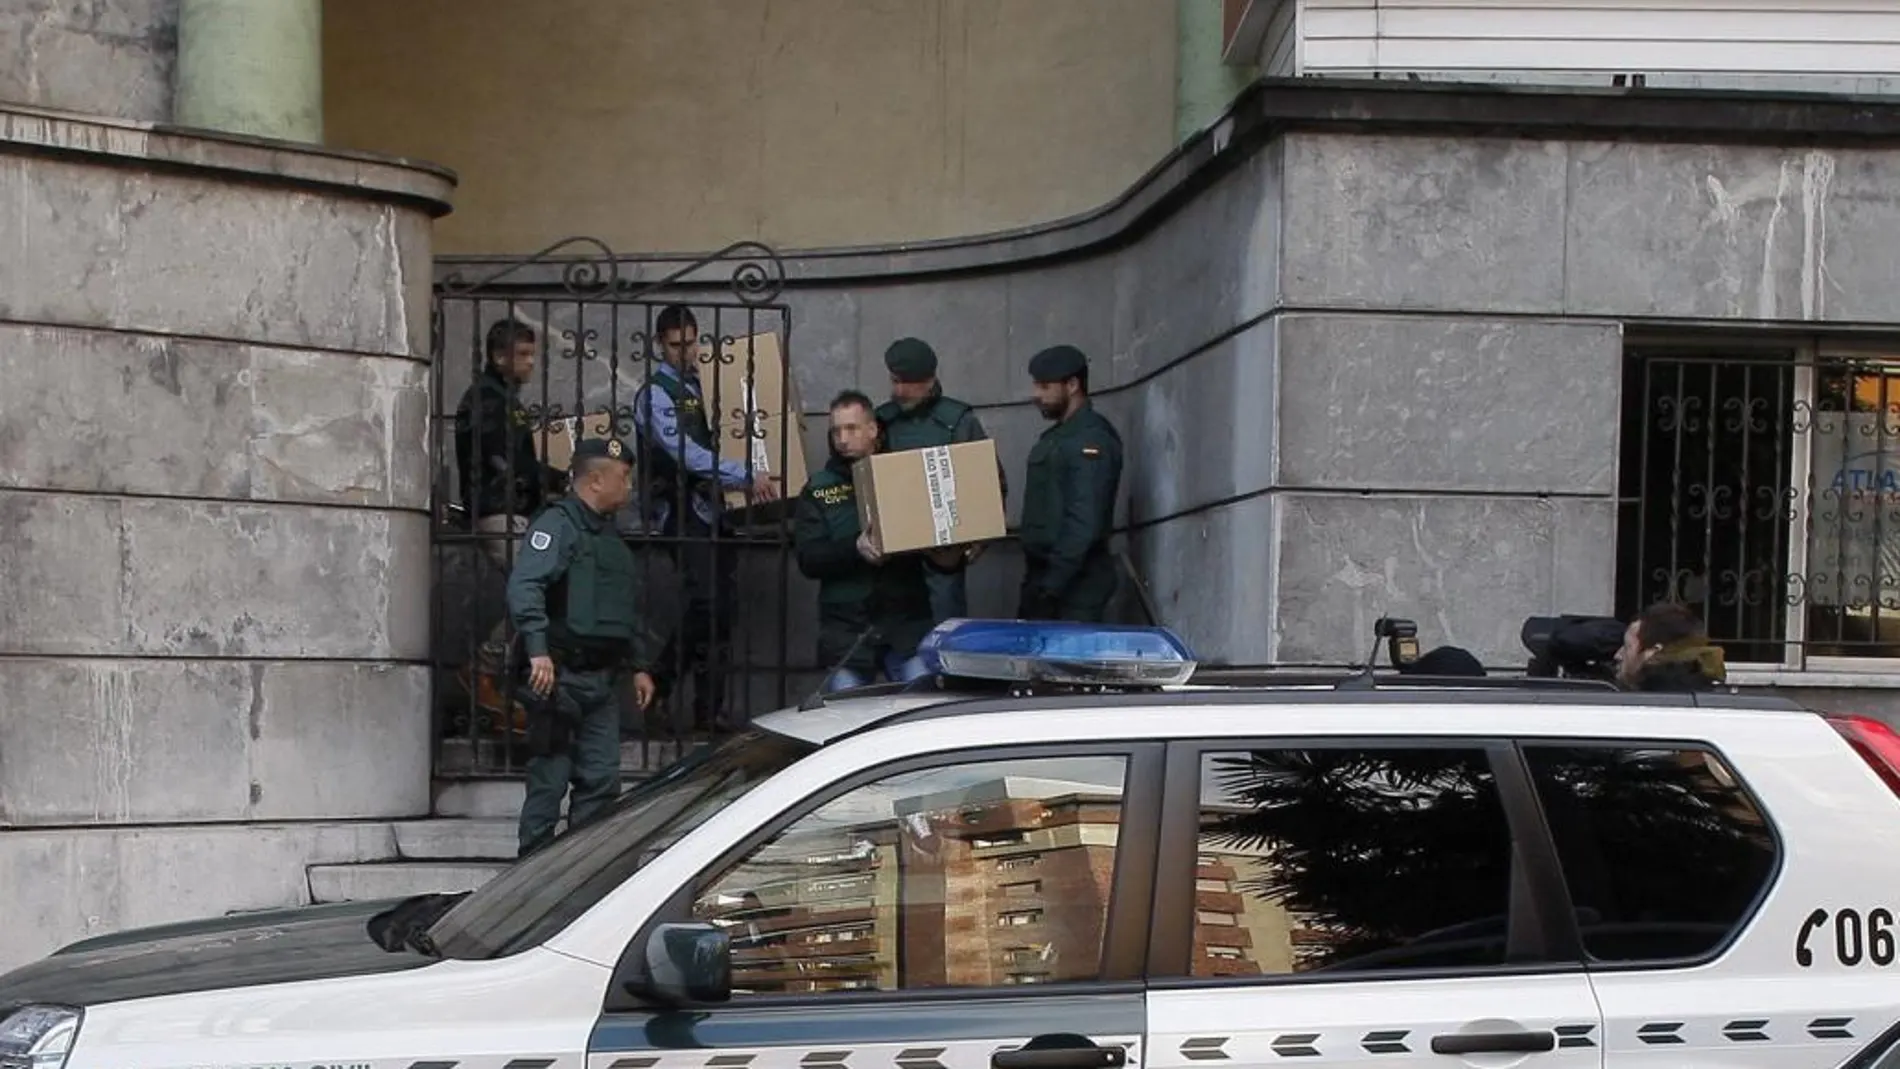 Agentes de la Unidad Central Operativa (UCO) salen con varias cajas de la sede central de UGT-Asturias en Oviedo tras finalizar el registro